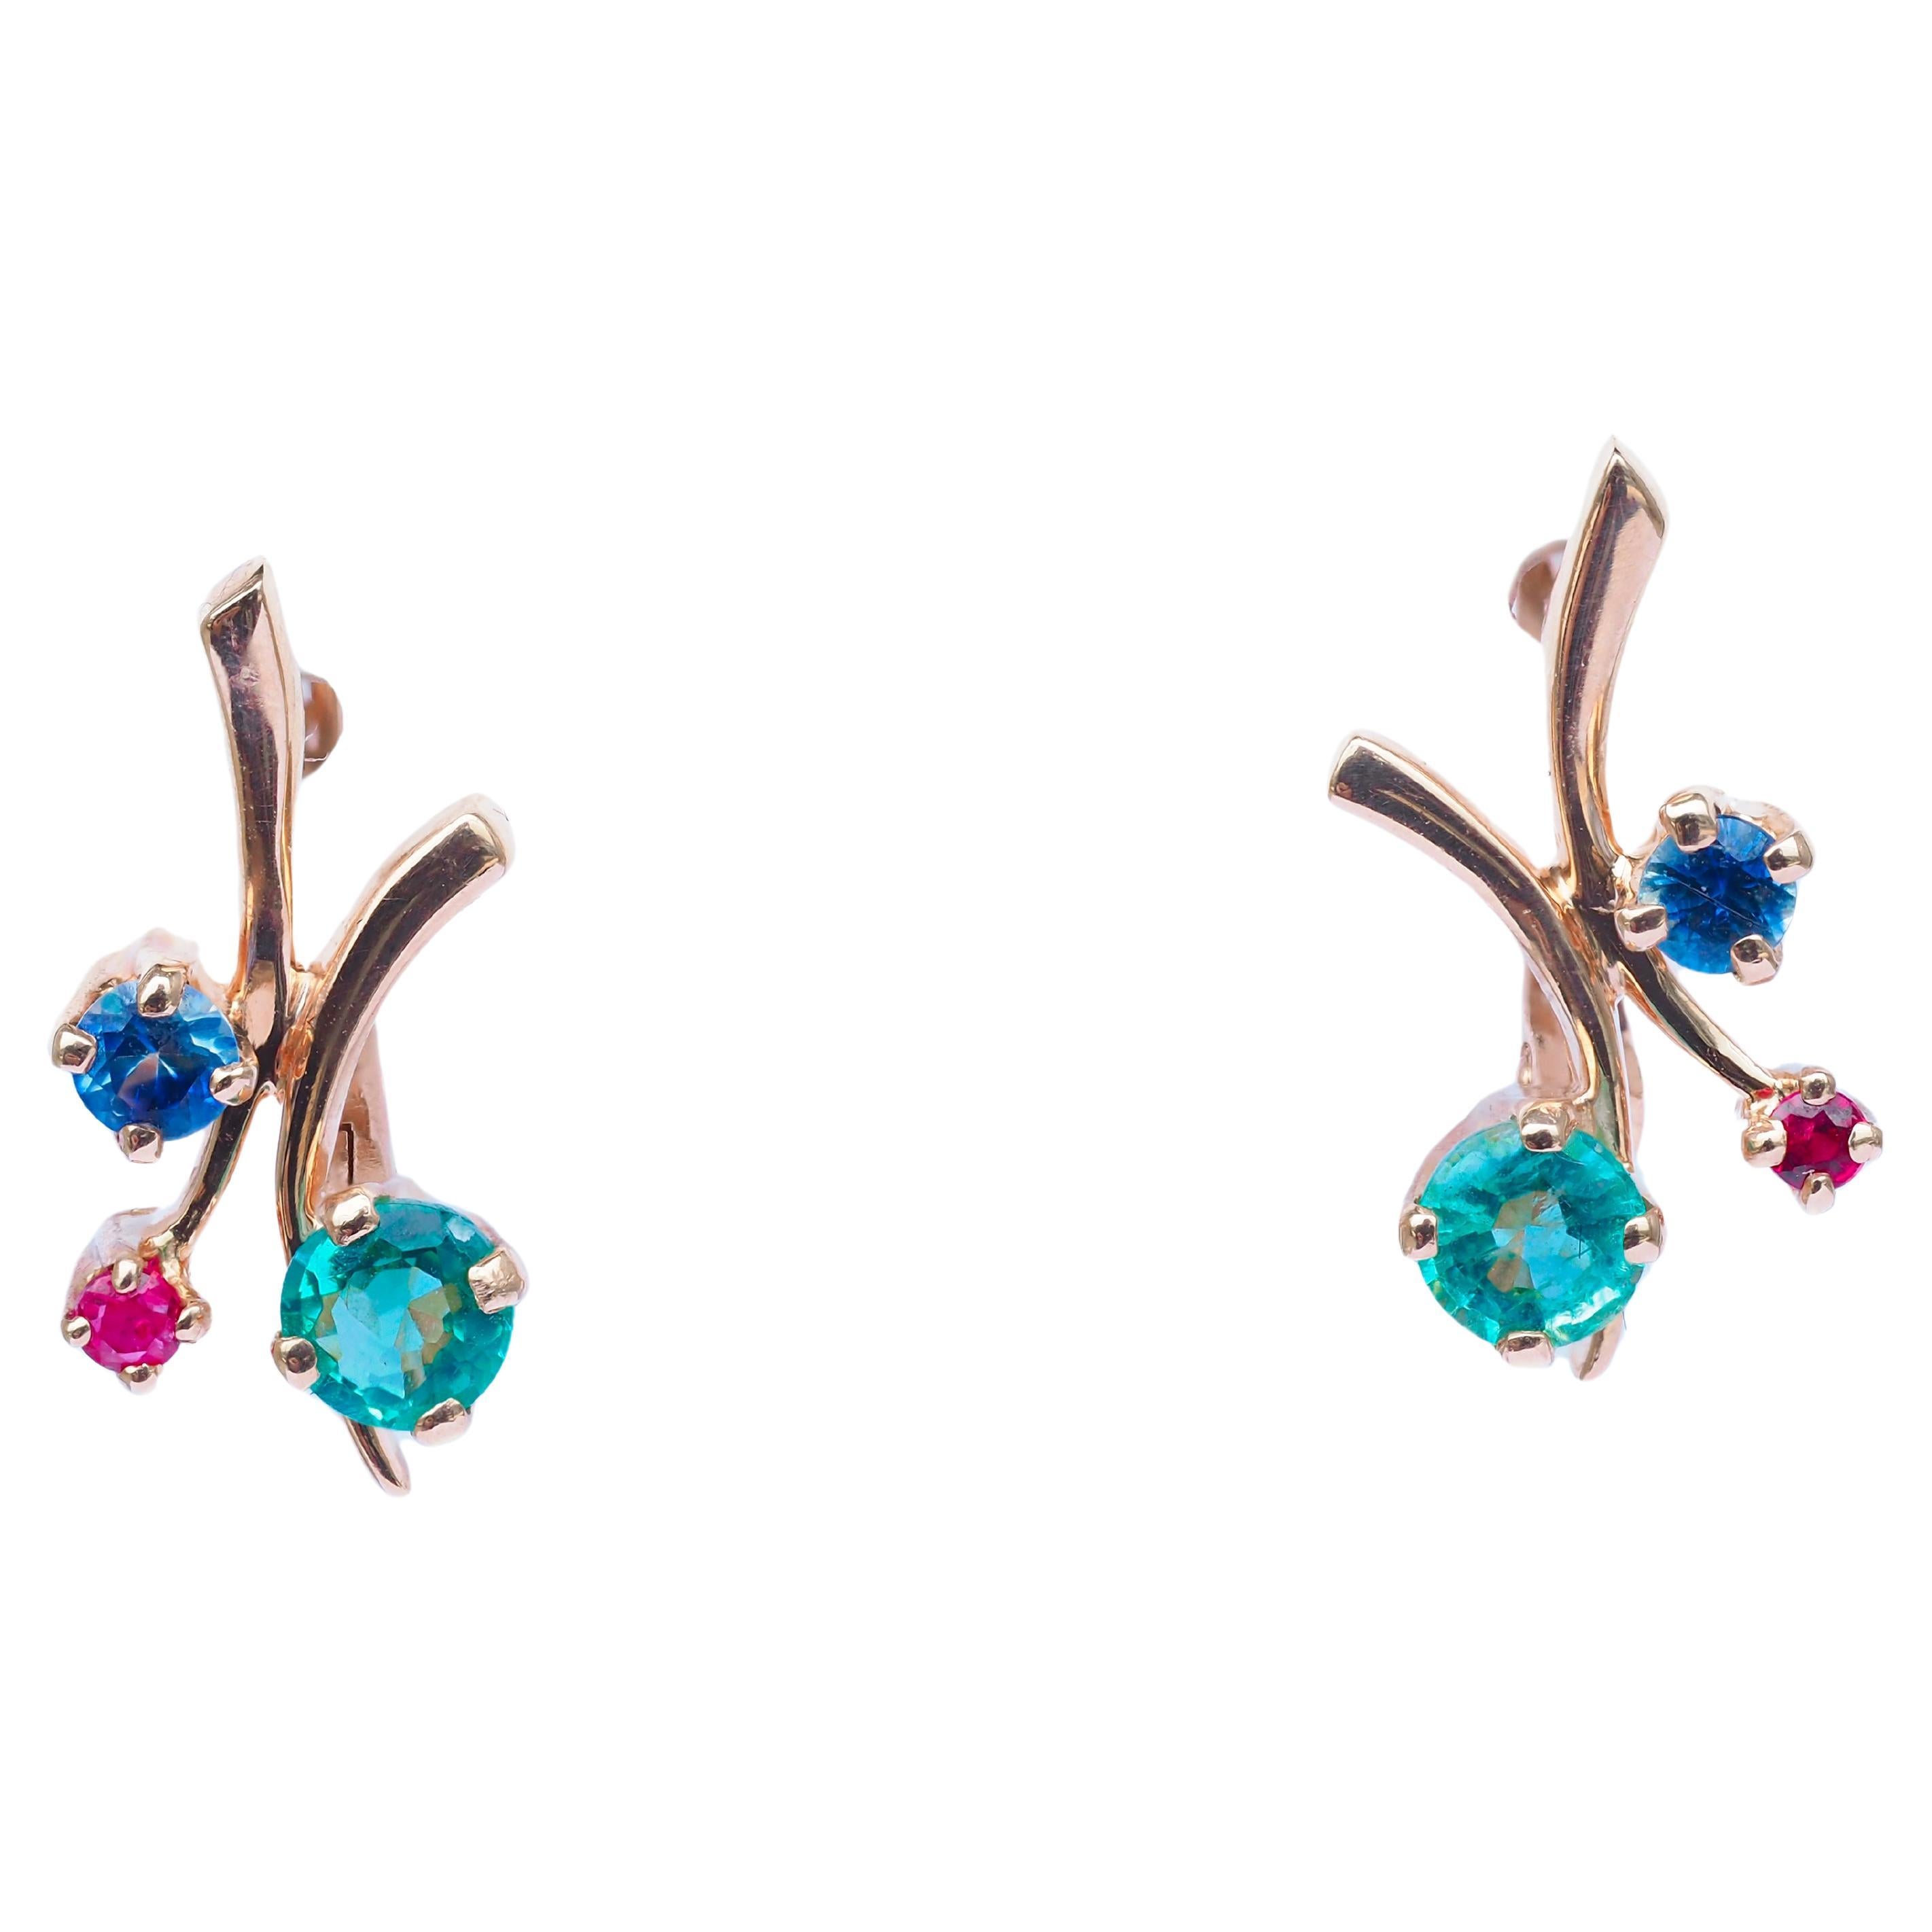 Emerald, sapphire, ruby earrings in 14k gold. 